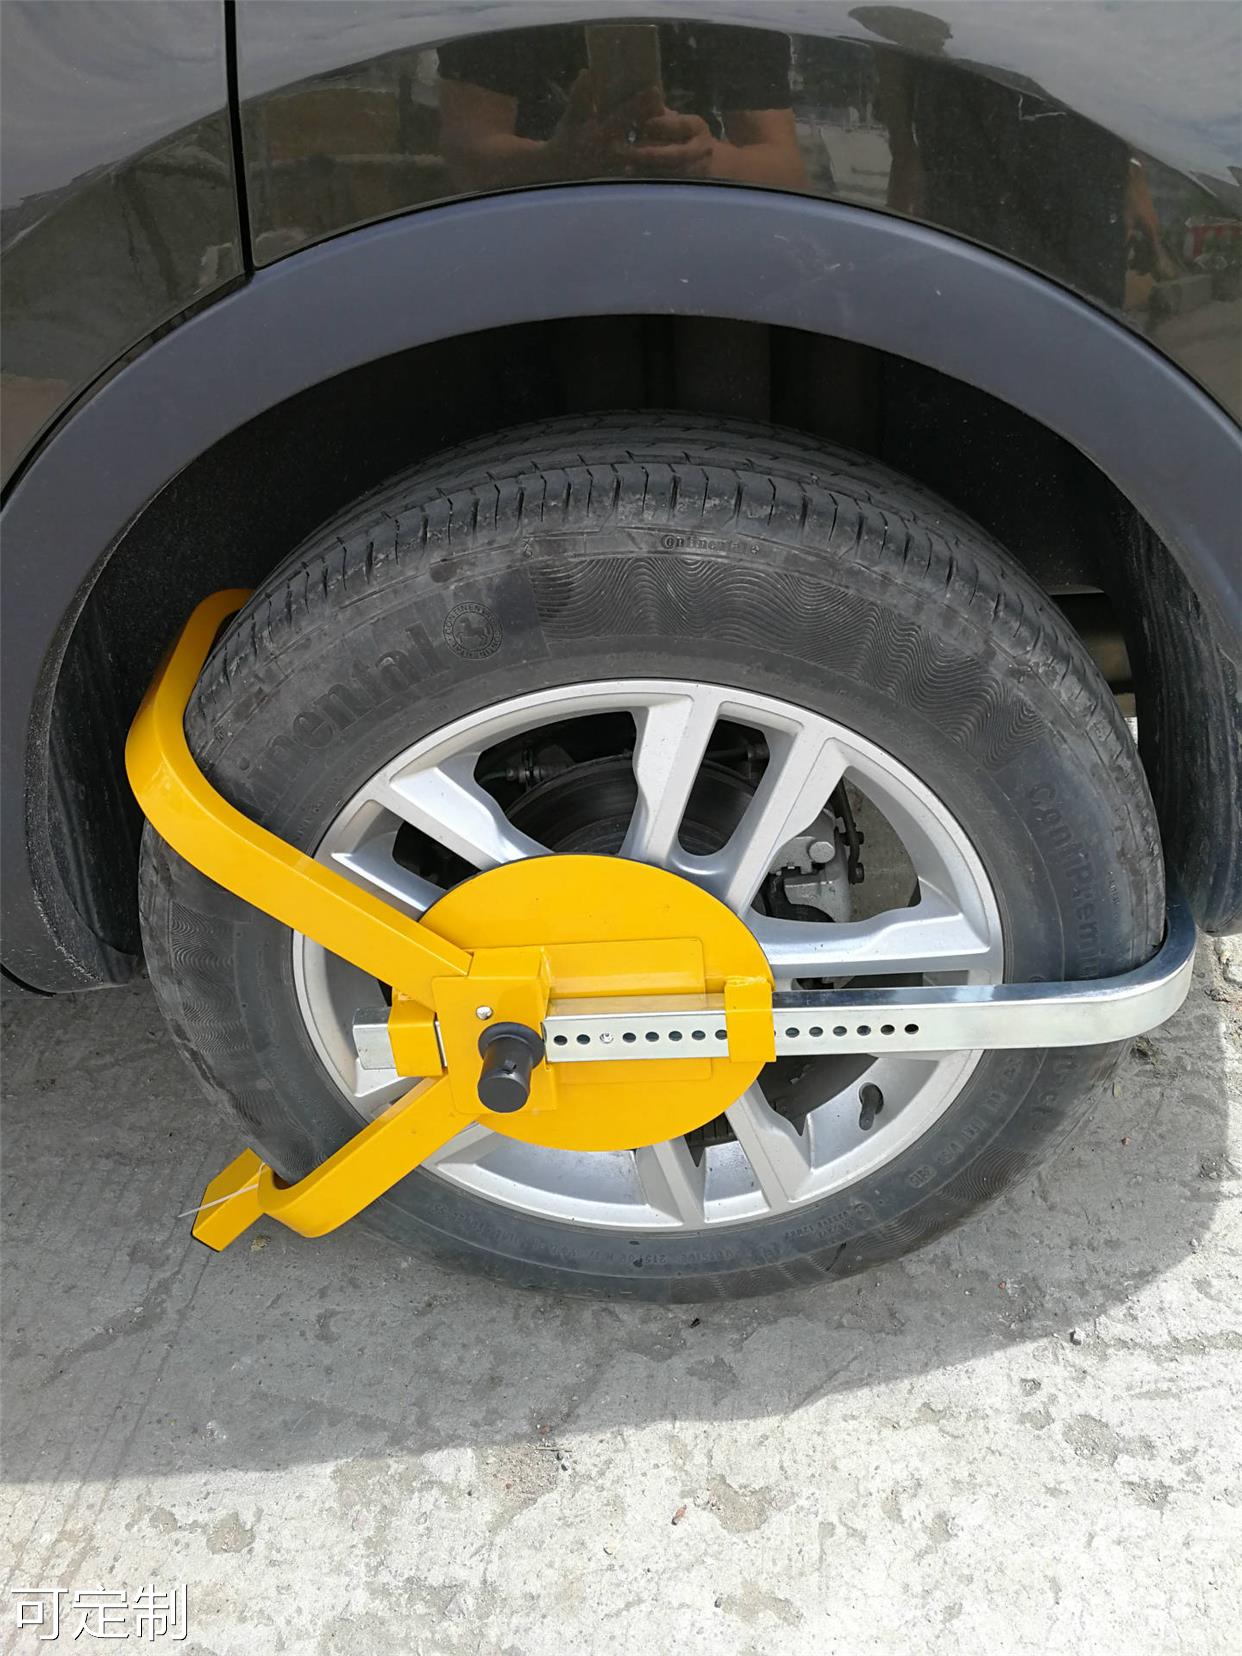 工厂直销汽车轮胎锁 三叉车位锁 汽车防盗锁 带吸盘车轮锁具